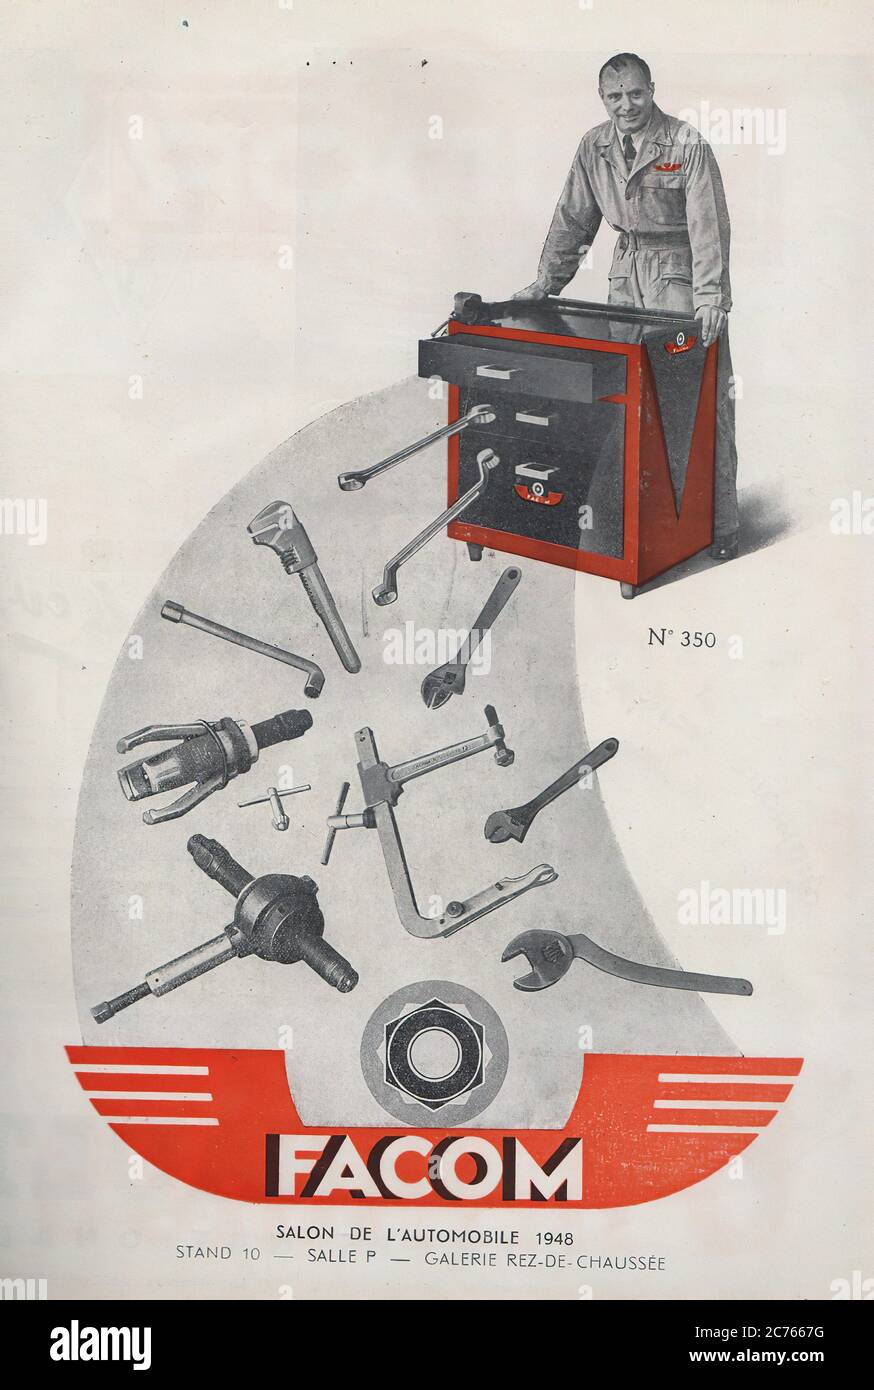 Publicité Outillages Facom De 1948 - Vintage car advertising Stock Photo -  Alamy